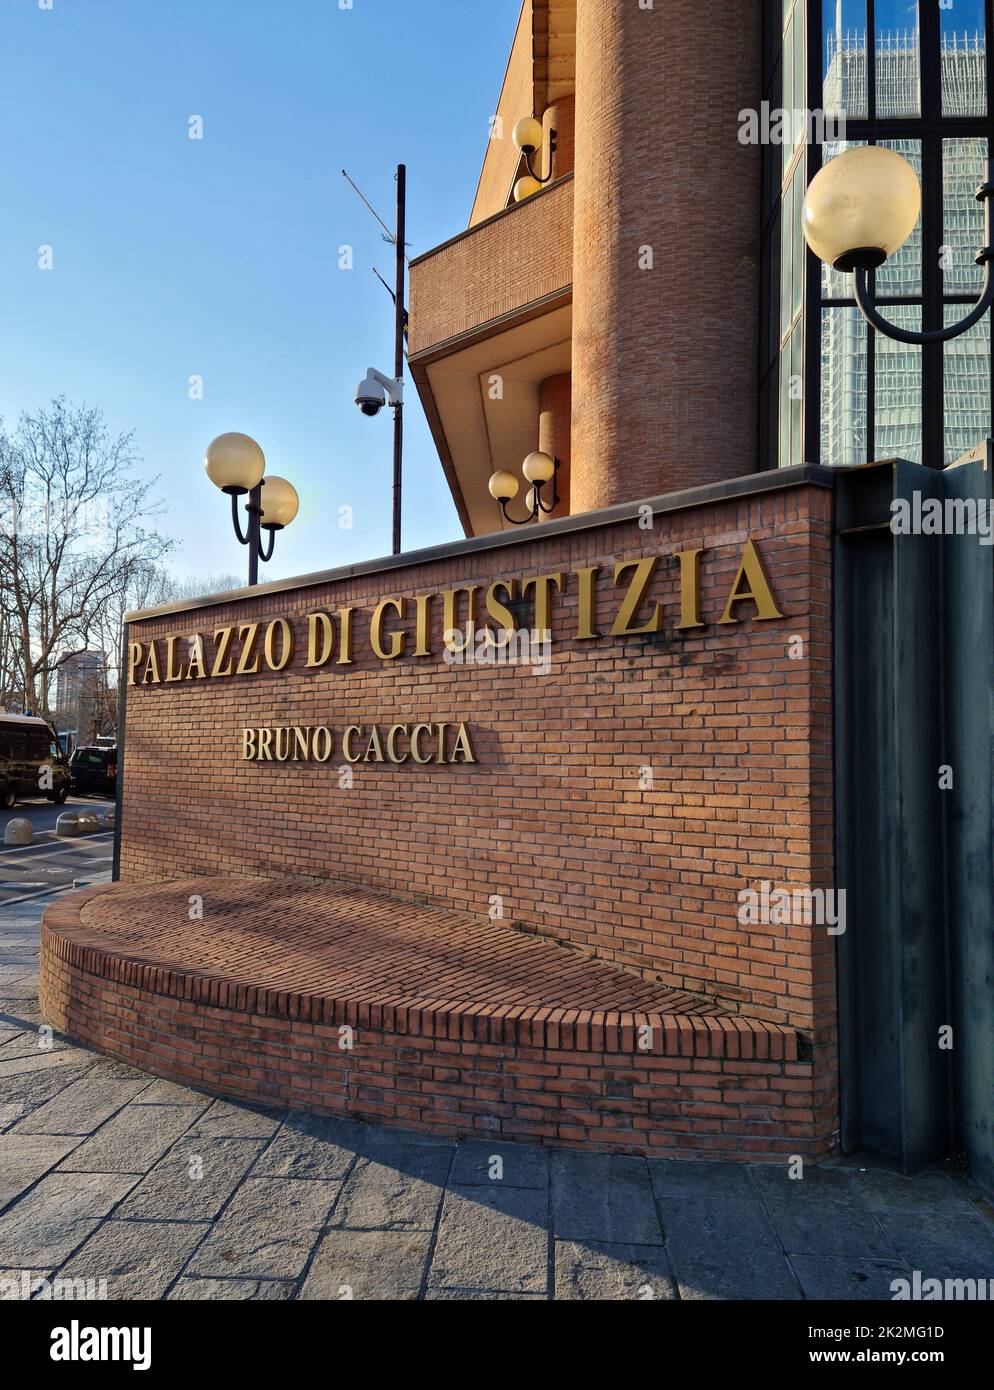 Il Palazzo di Giustizia è un posto molto importante nella vita sociale e civile italiana. Qui il Palazzo di Giustizia Bruno Caccia a Torino Foto Stock